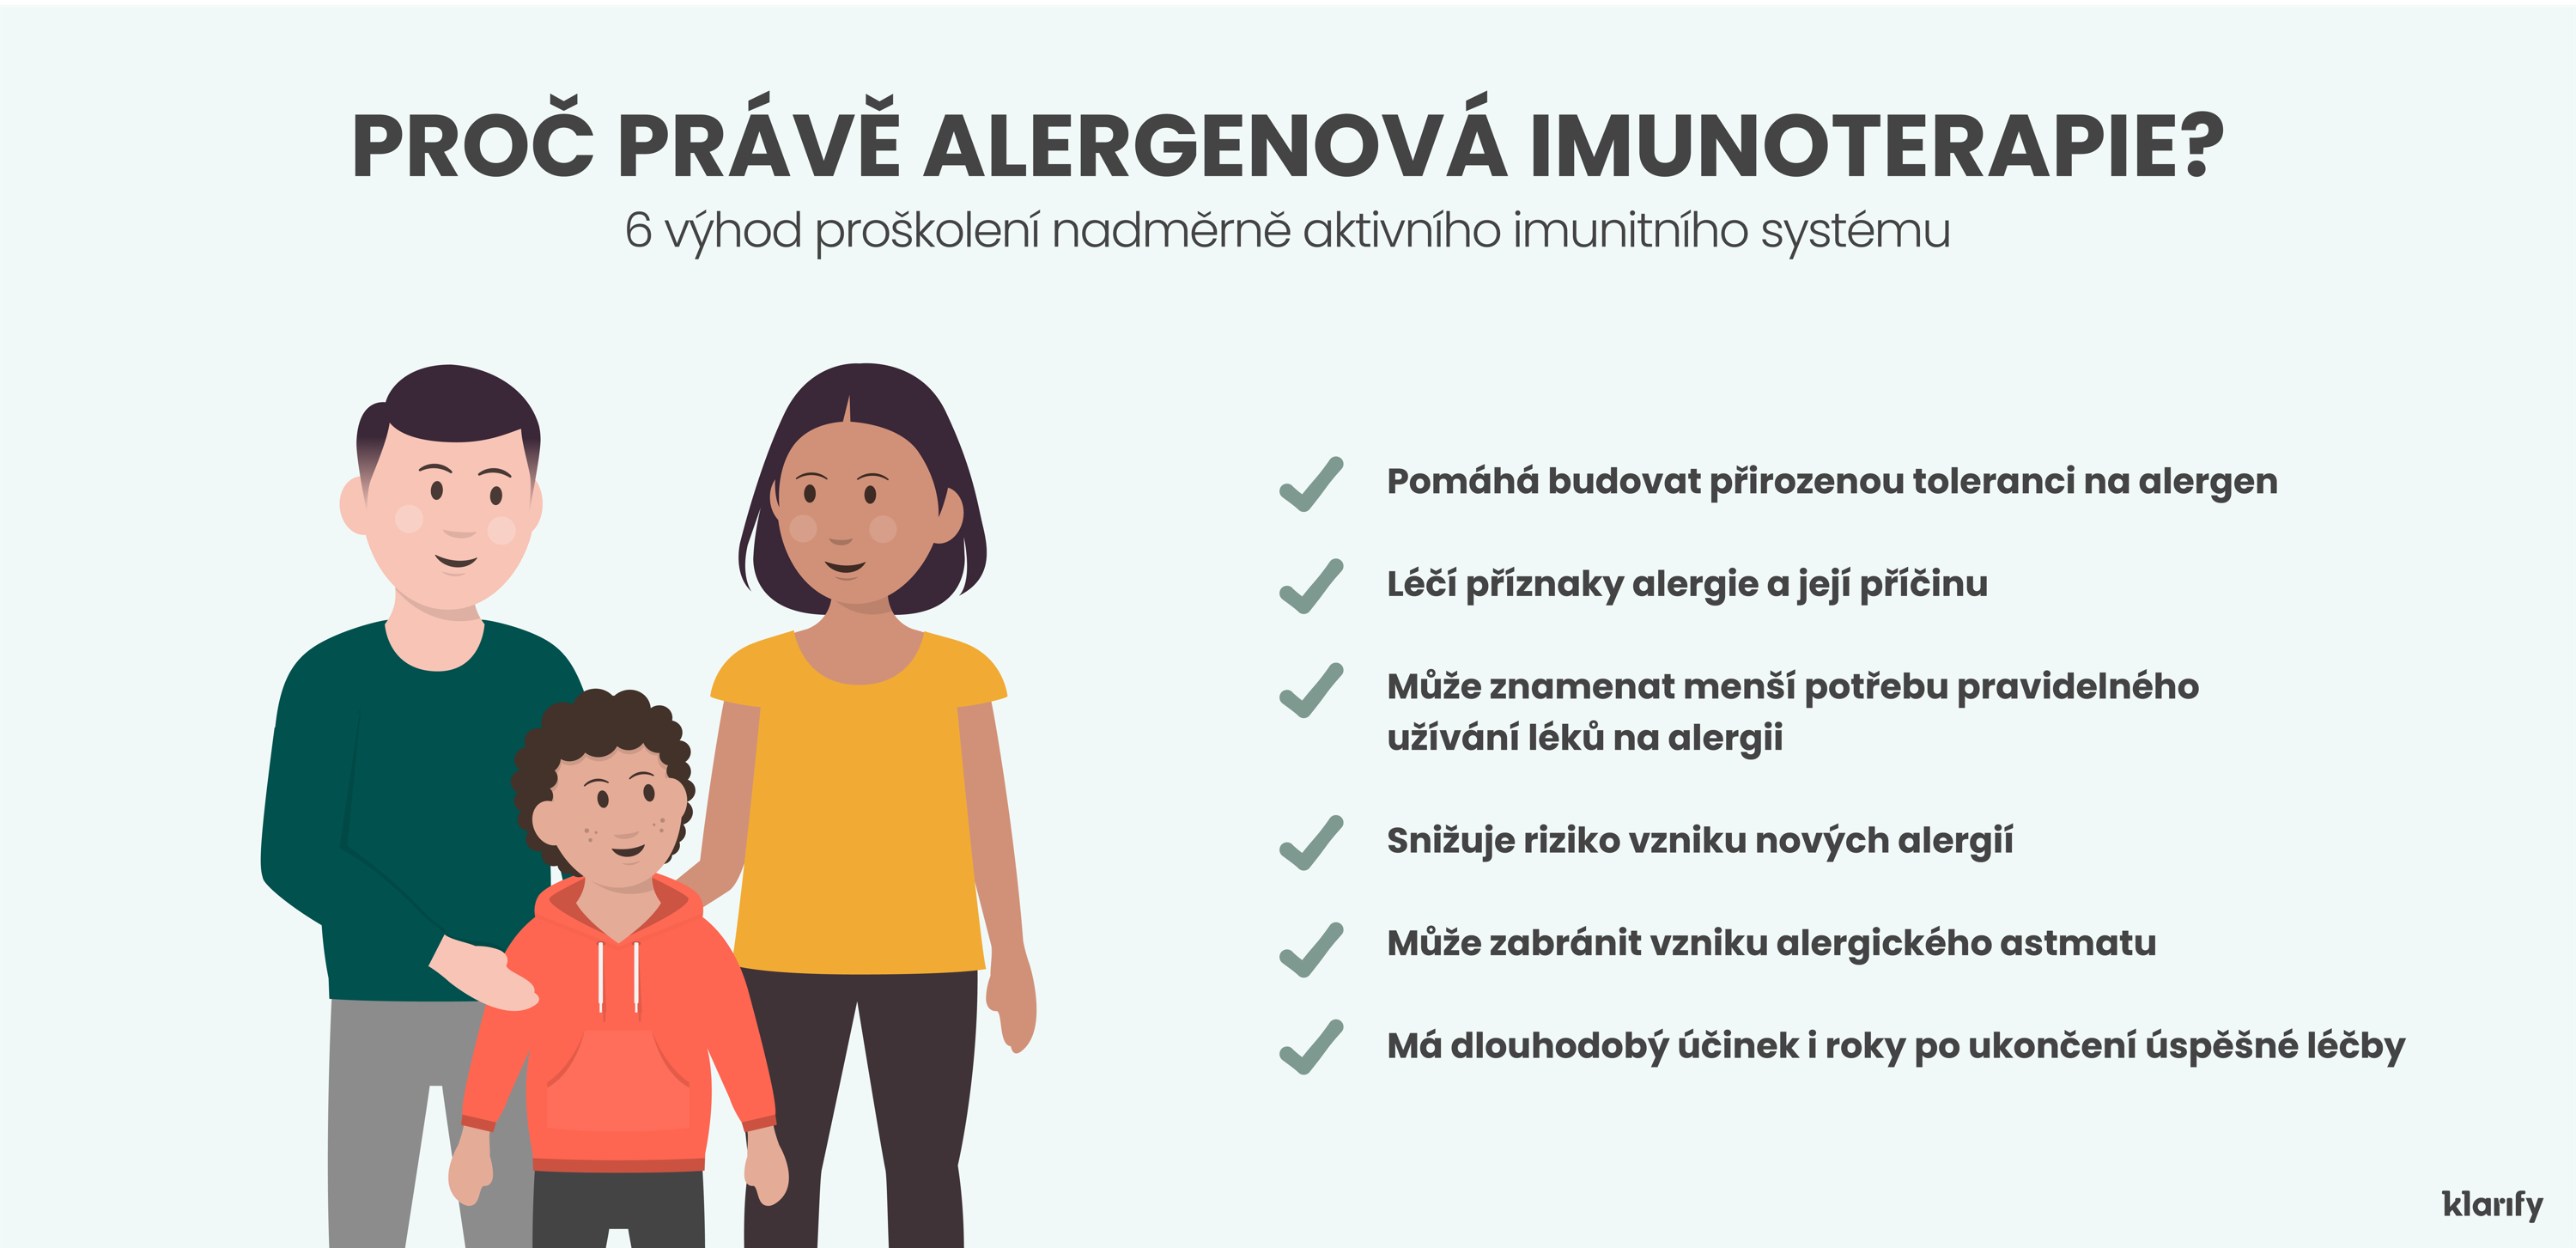  Infografika popisující alergenovou imunoterapii, léčbu k proškolení nadměrně aktivního imunitního systému. Podrobnosti infografiky jsou uvedeny níže 